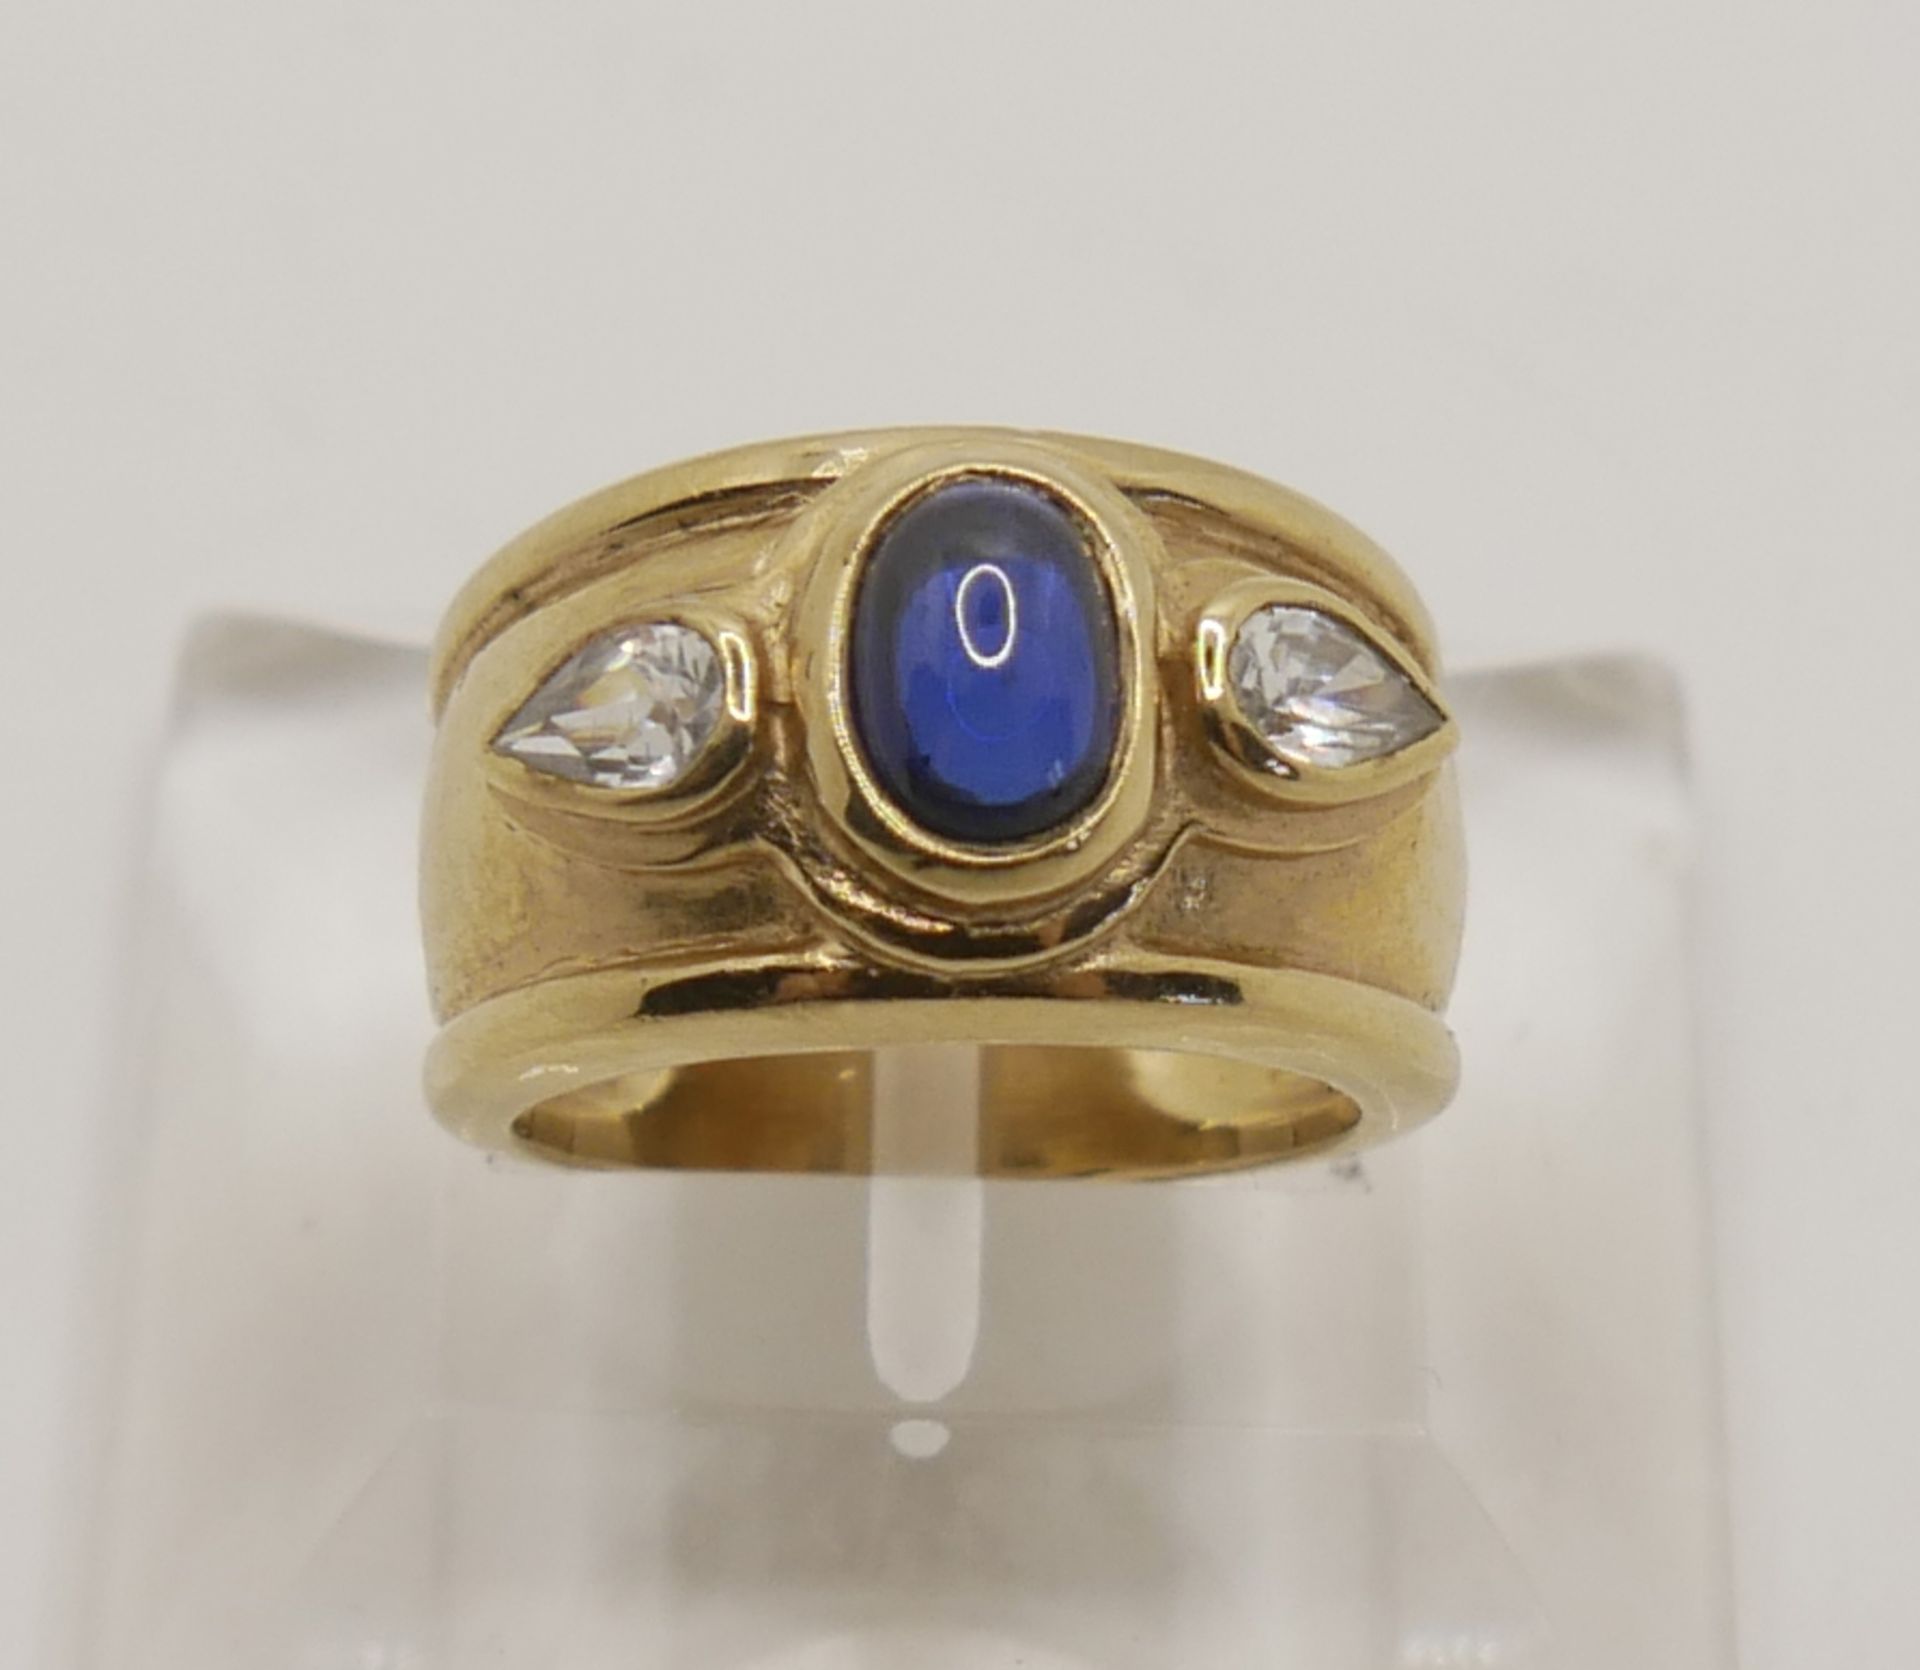 Damenring, 925er Silber vergoldet. Ringgröße 48, besetzt mit 1 blauen Stein, sowie beidseitig